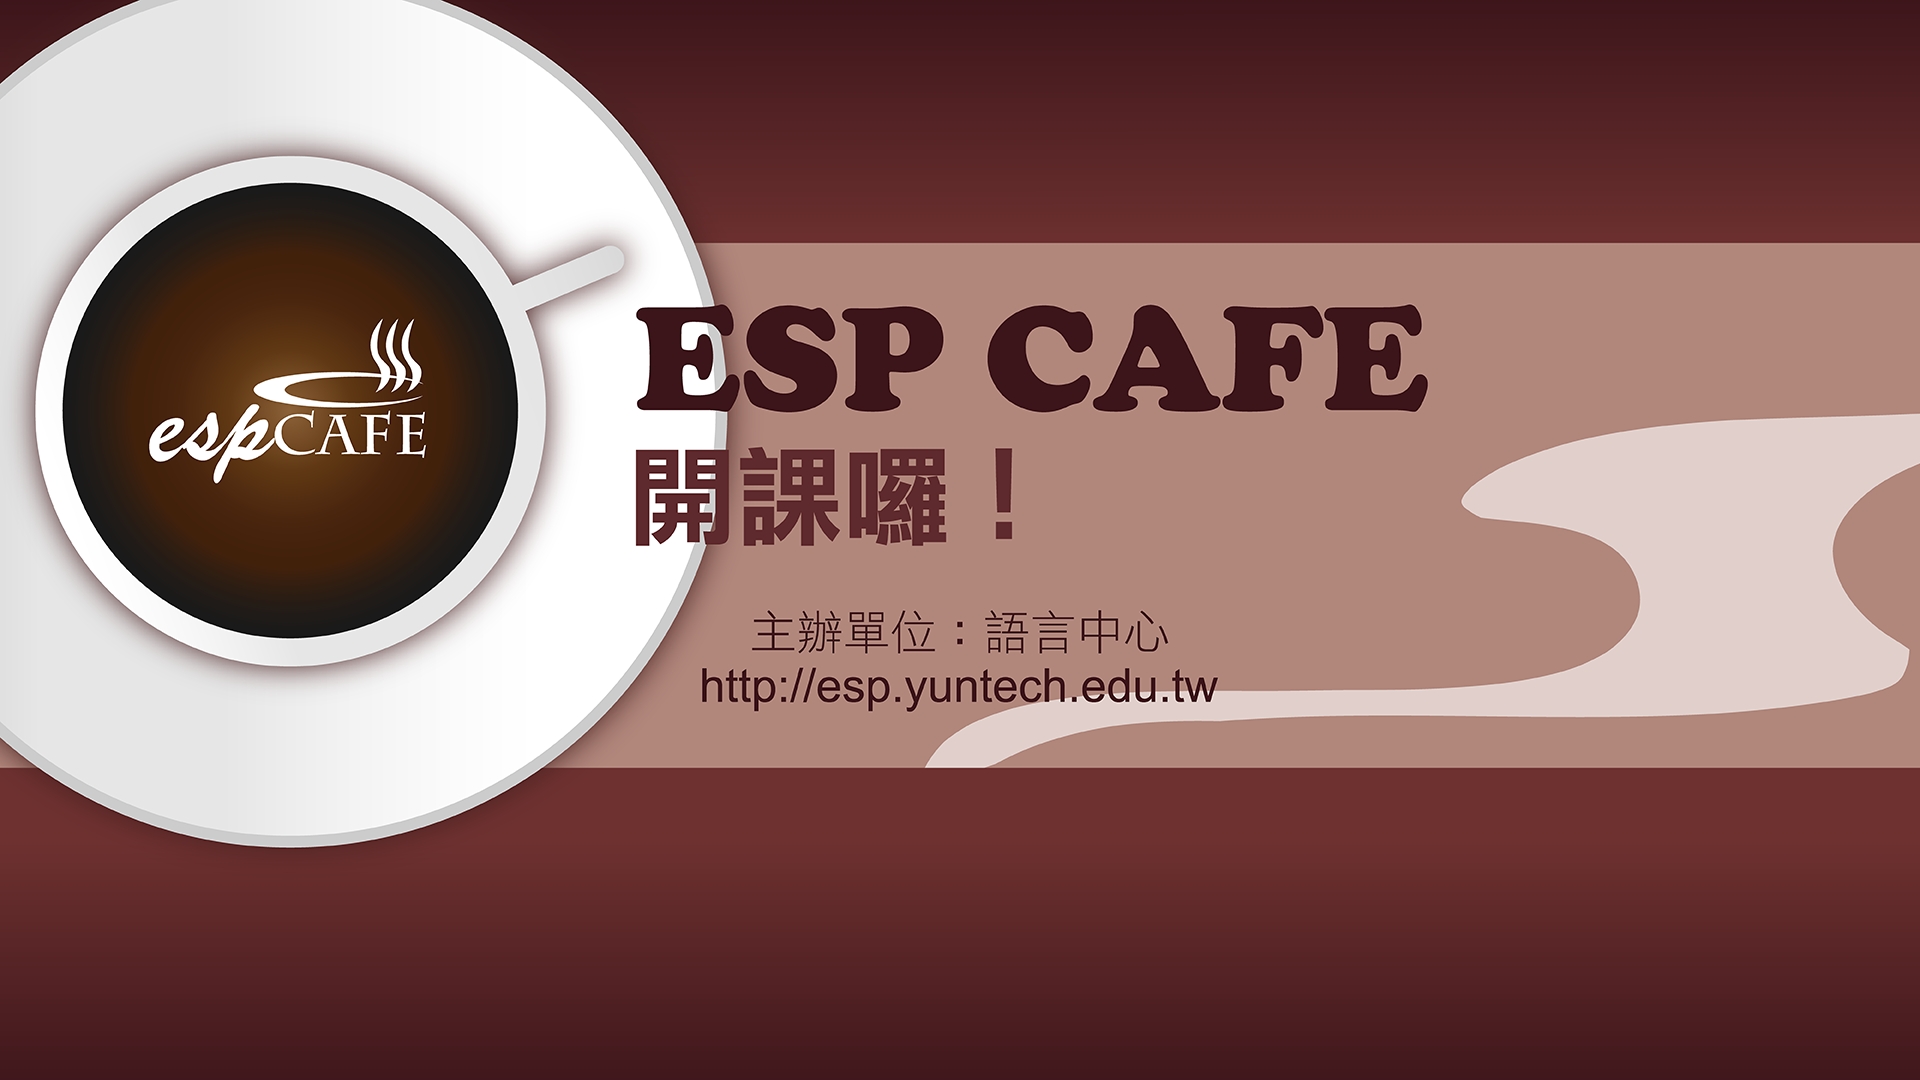 語言中心ESP CAFE歡迎您來聊天~